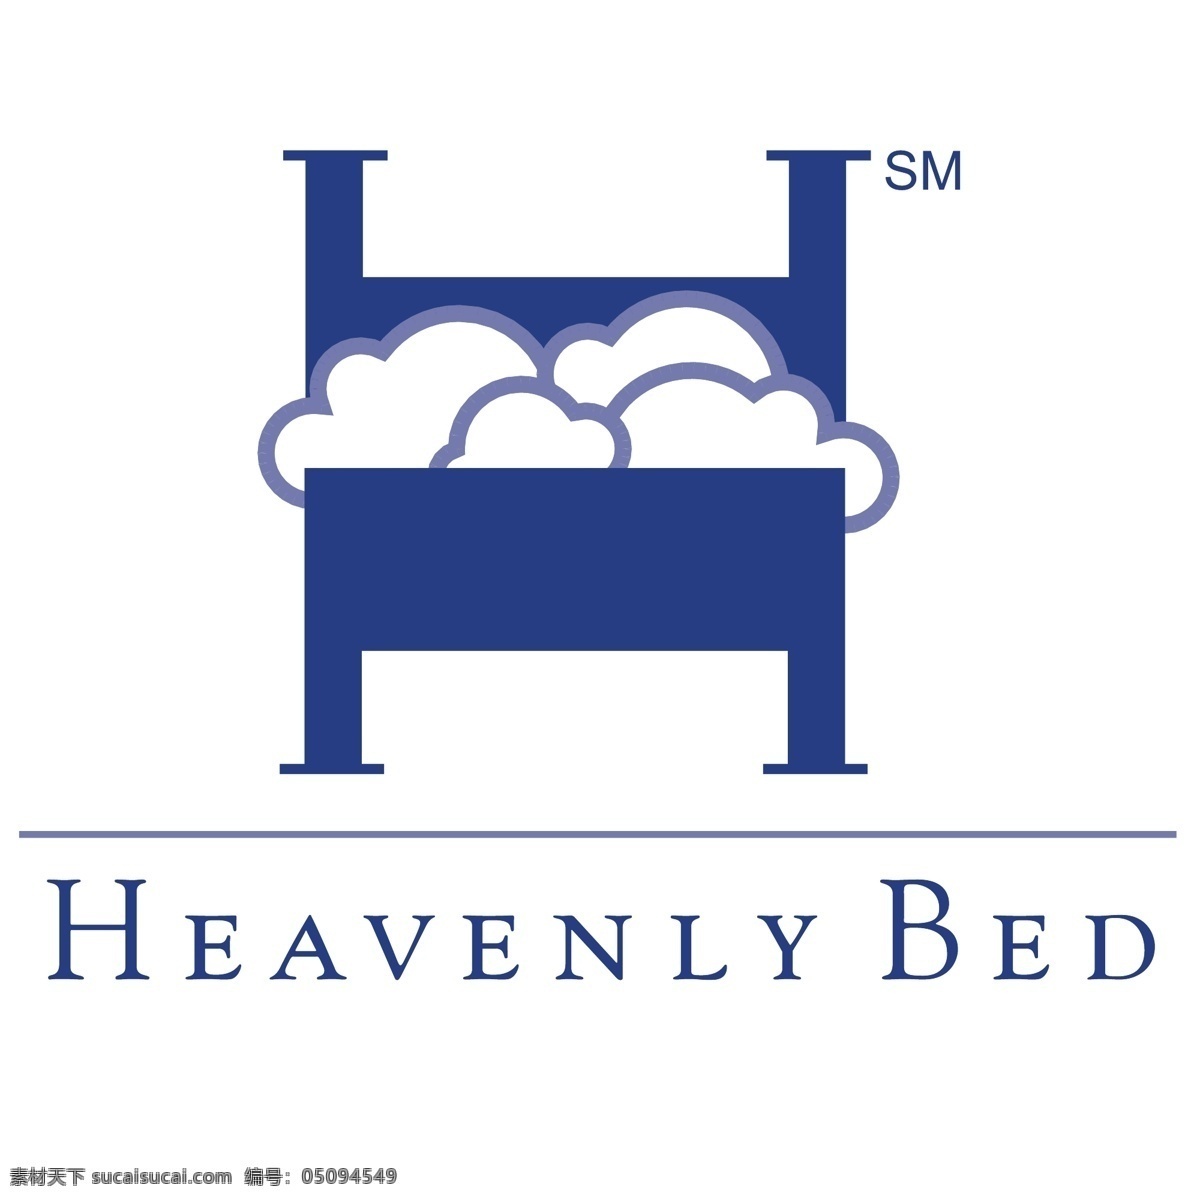 天上 床 免费 床上 标识 标志 psd源文件 logo设计